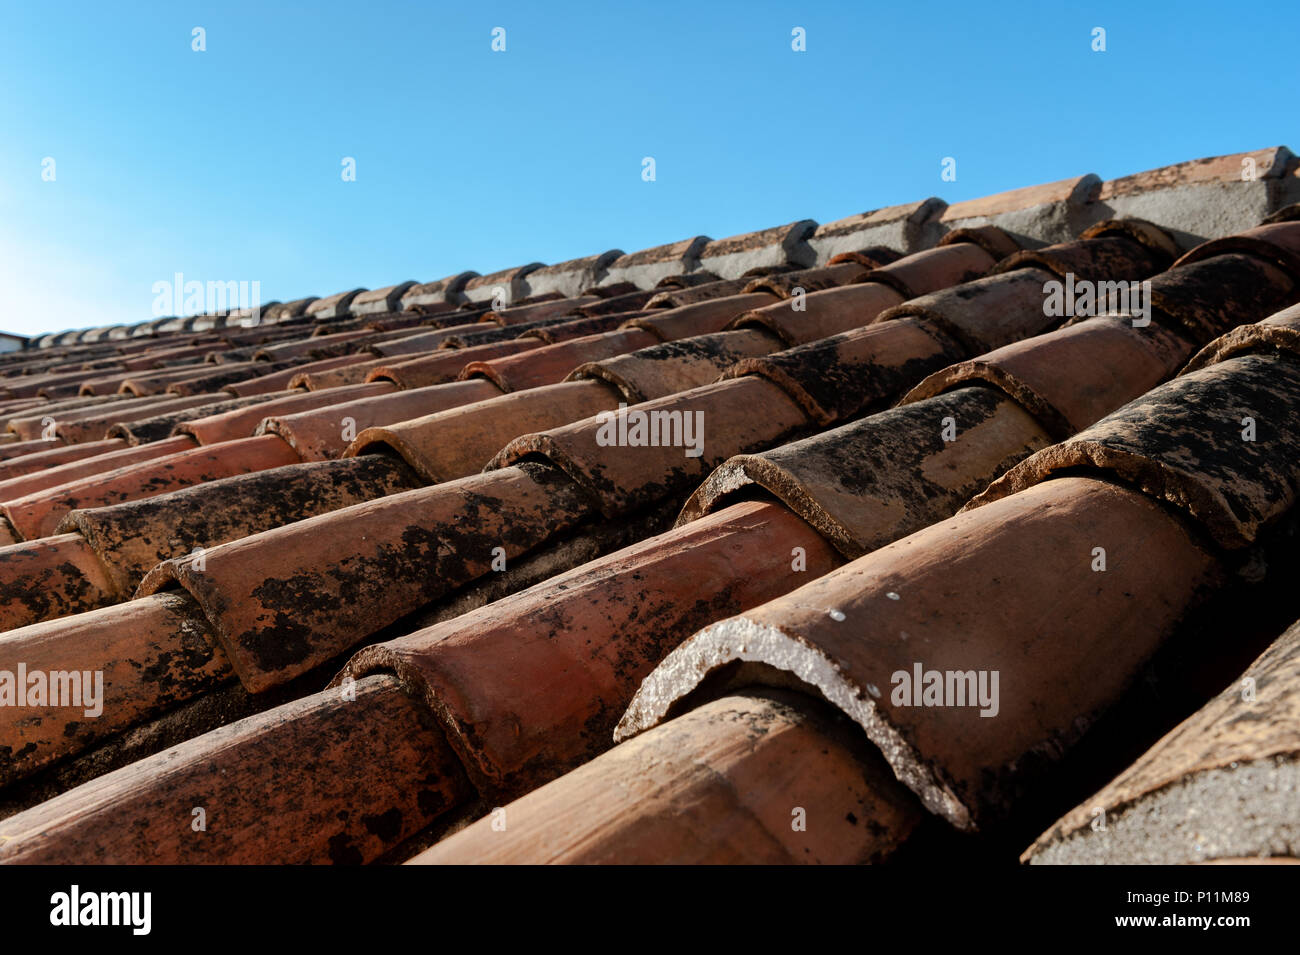 Spanische Dachziegel an einem klaren Tag in Malaga, Costa del Sol, Spanien mit kopieren. Stockfoto